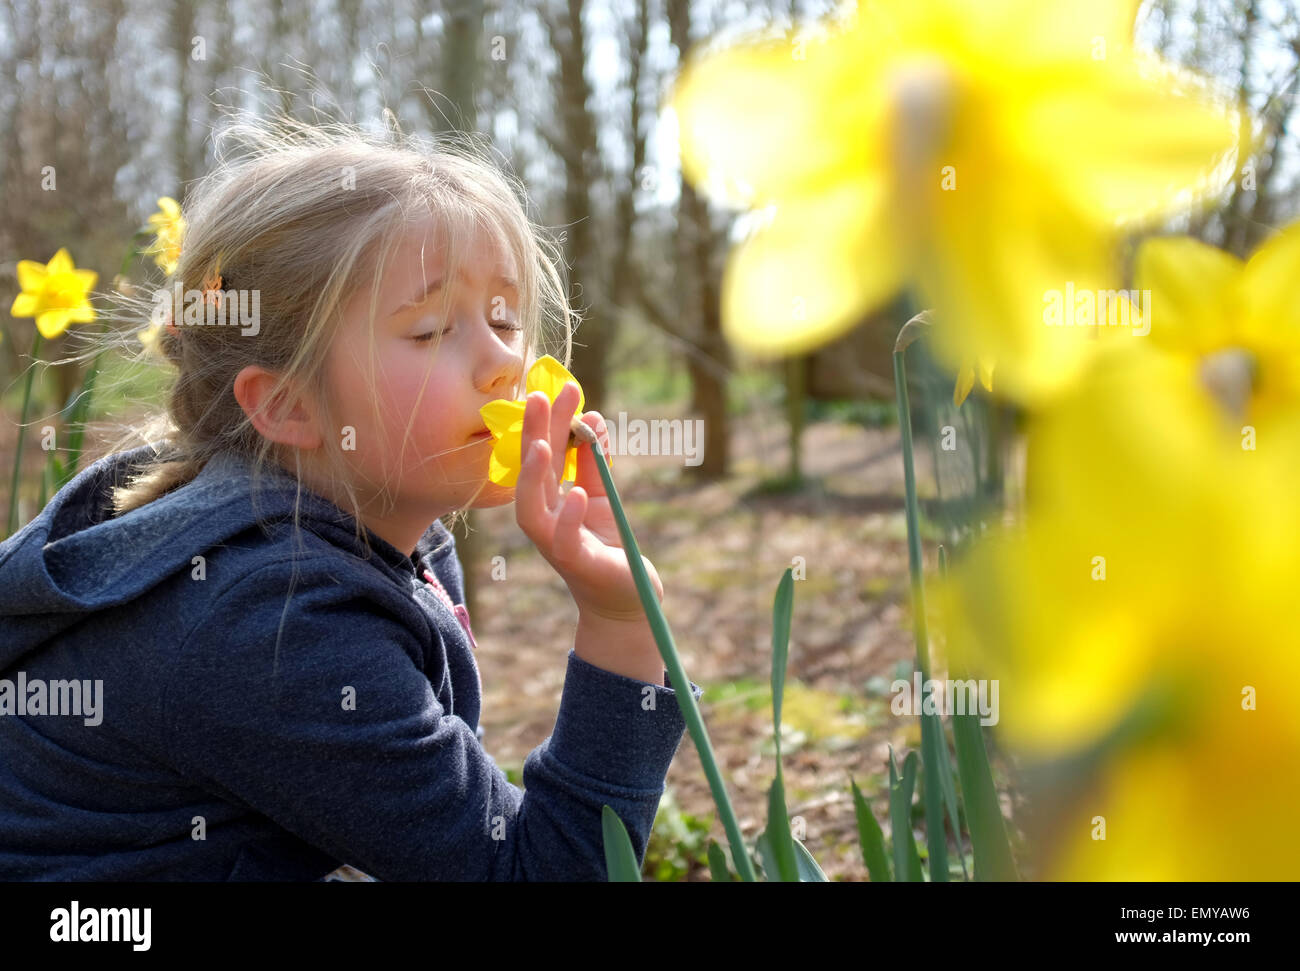 Joven oliendo flores narcisos en primavera Foto de stock